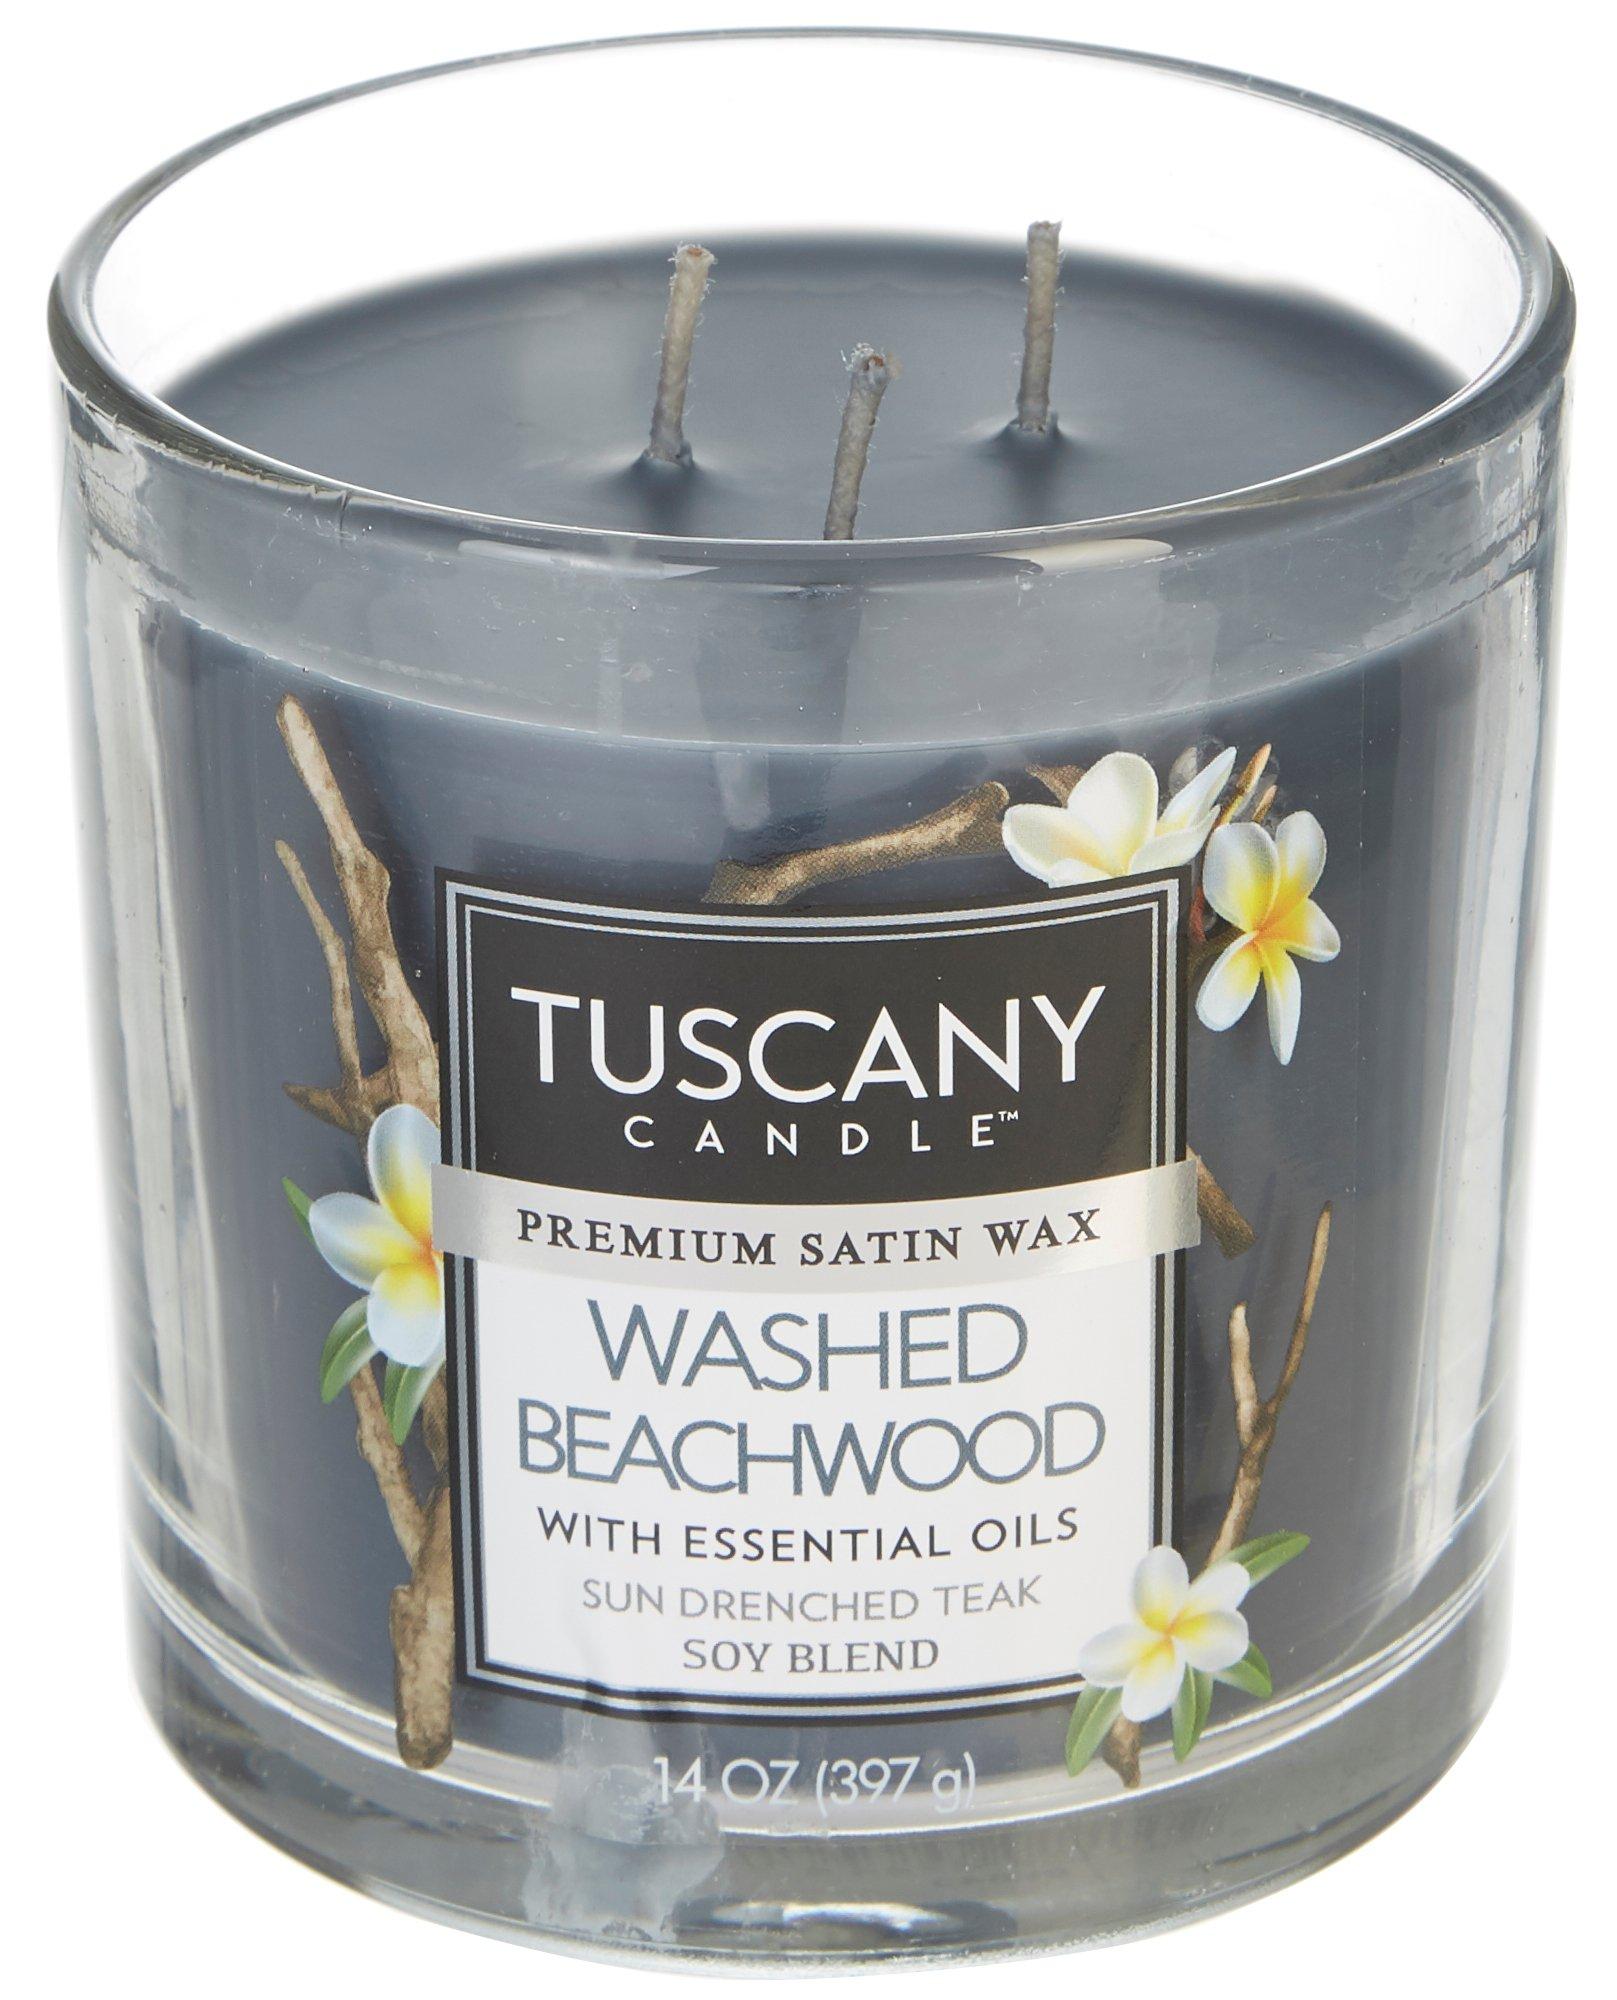 Tuscany 14 oz. Washed Beachwood Soy Blend Jar Candle